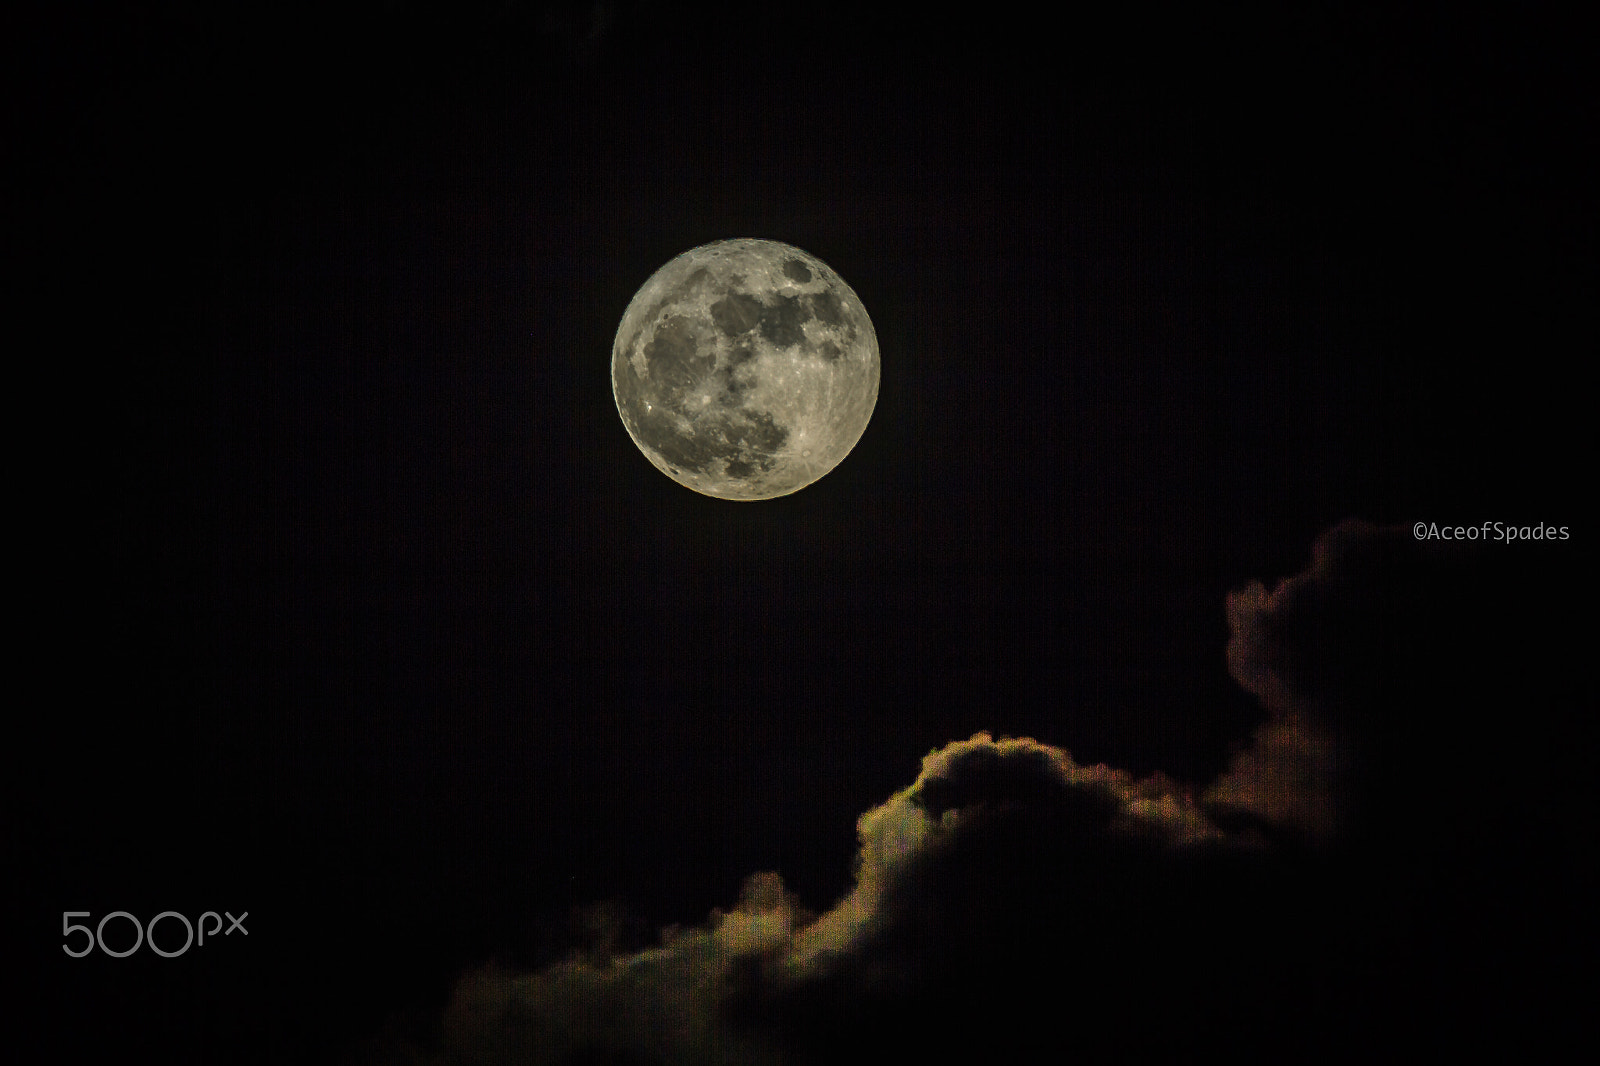 Canon EOS 7D sample photo. Super moon photography